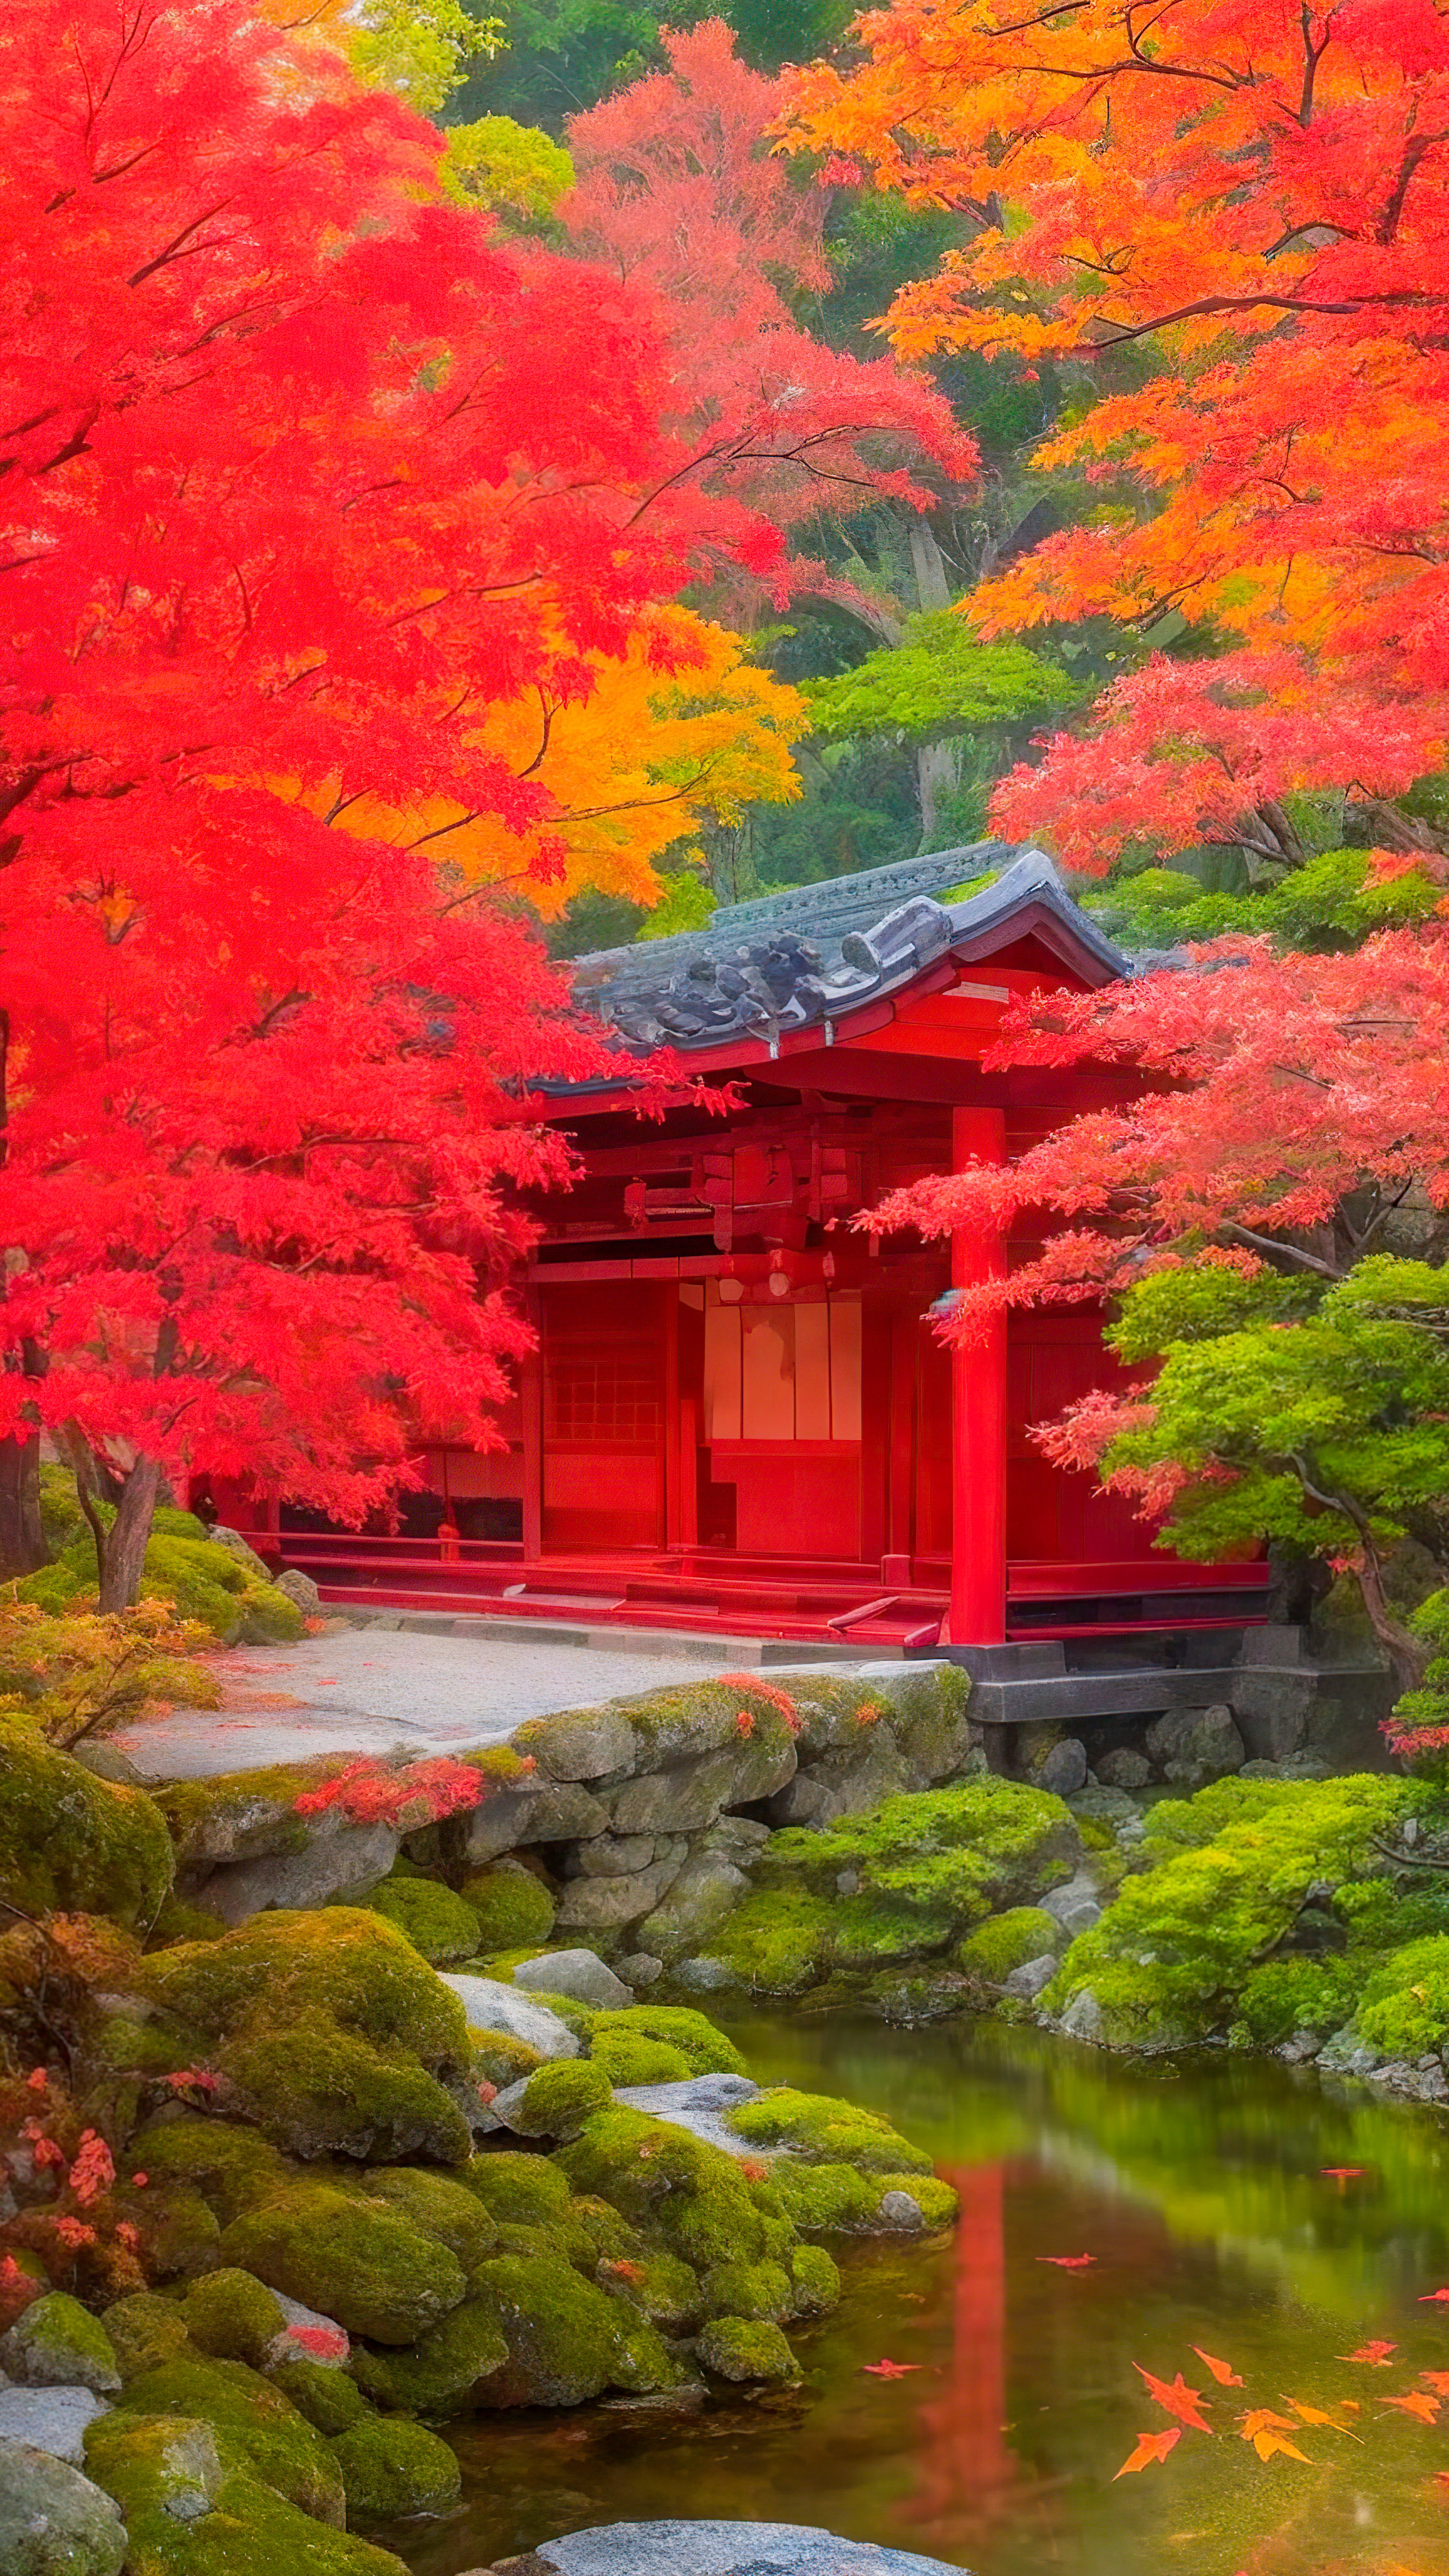 Ornez votre écran de verrouillage avec notre fond d'écran pour iPhone style, mettant en scène un jardin japonais tranquille en automne, avec des feuilles d'érable rouges vibrantes contre une architecture traditionnelle.